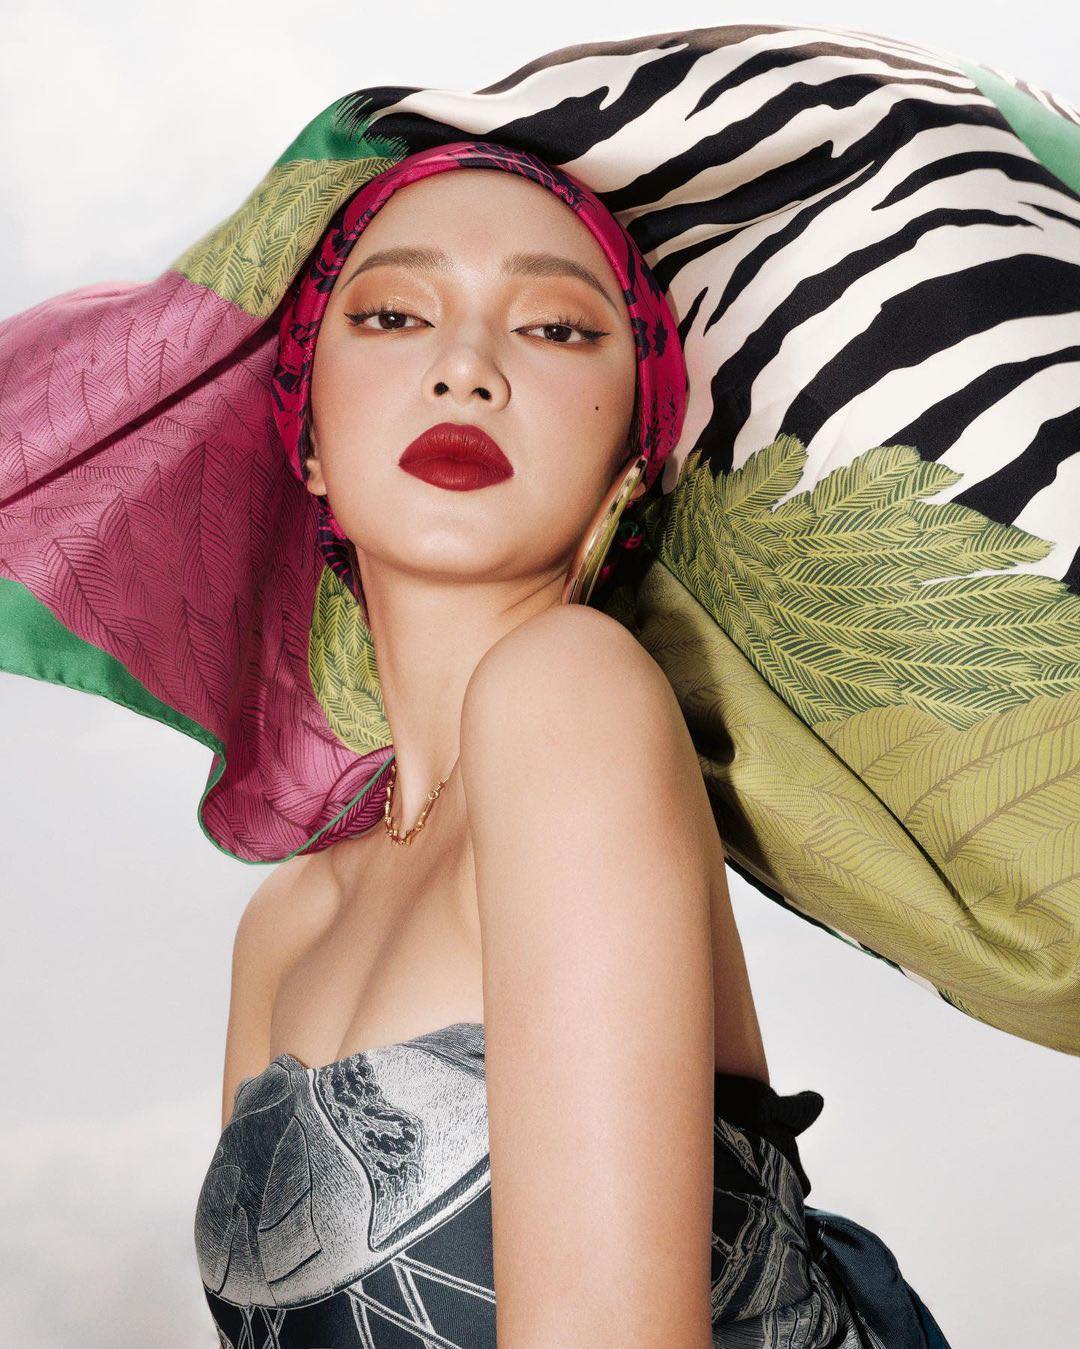 Châu Bùi đang là người mẫu ảnh kiêm fashionista đình đám trong showbiz Việt